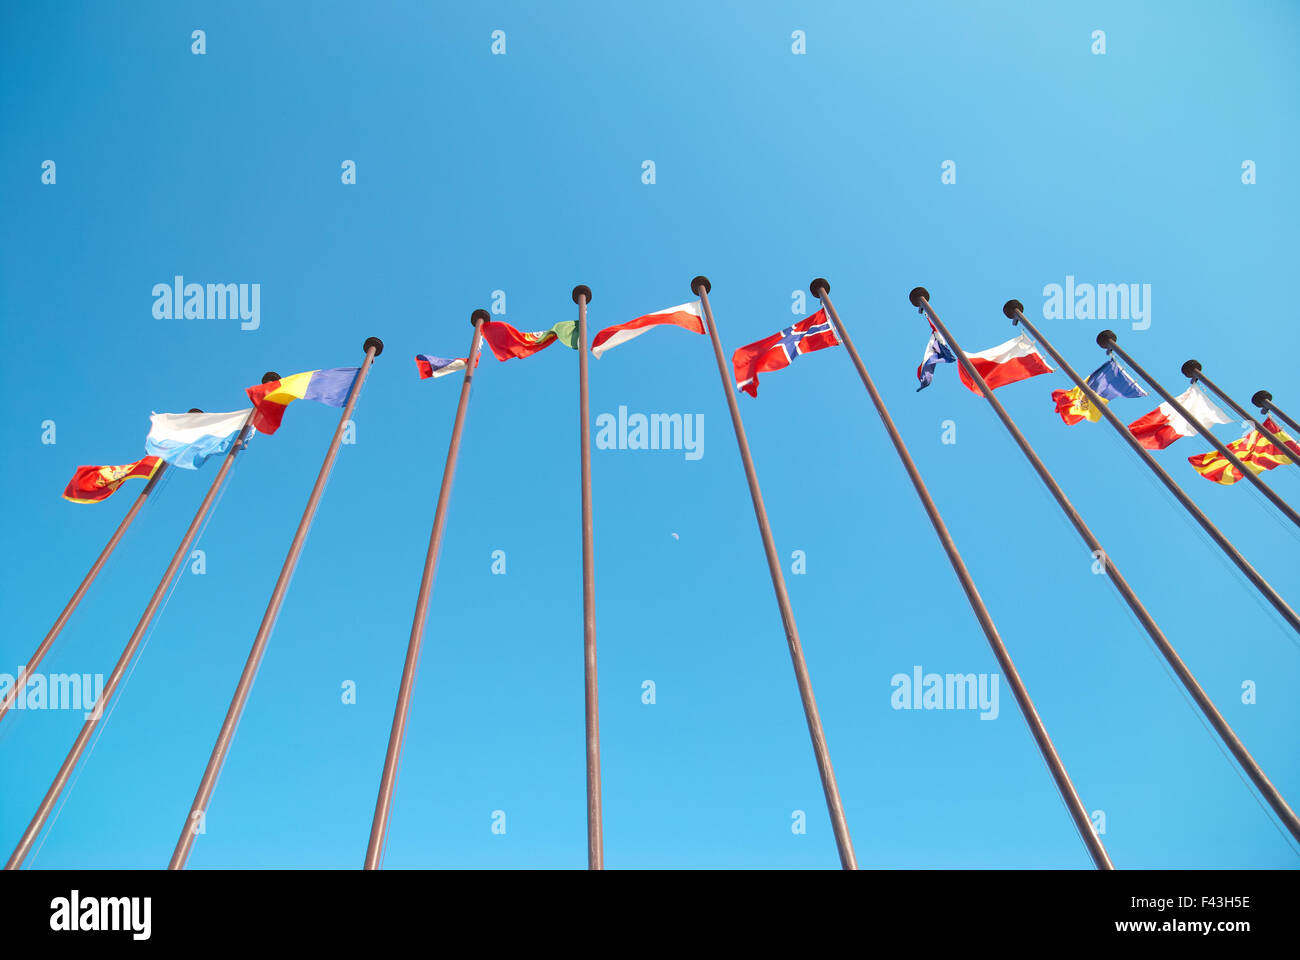 European flags Stock Photo